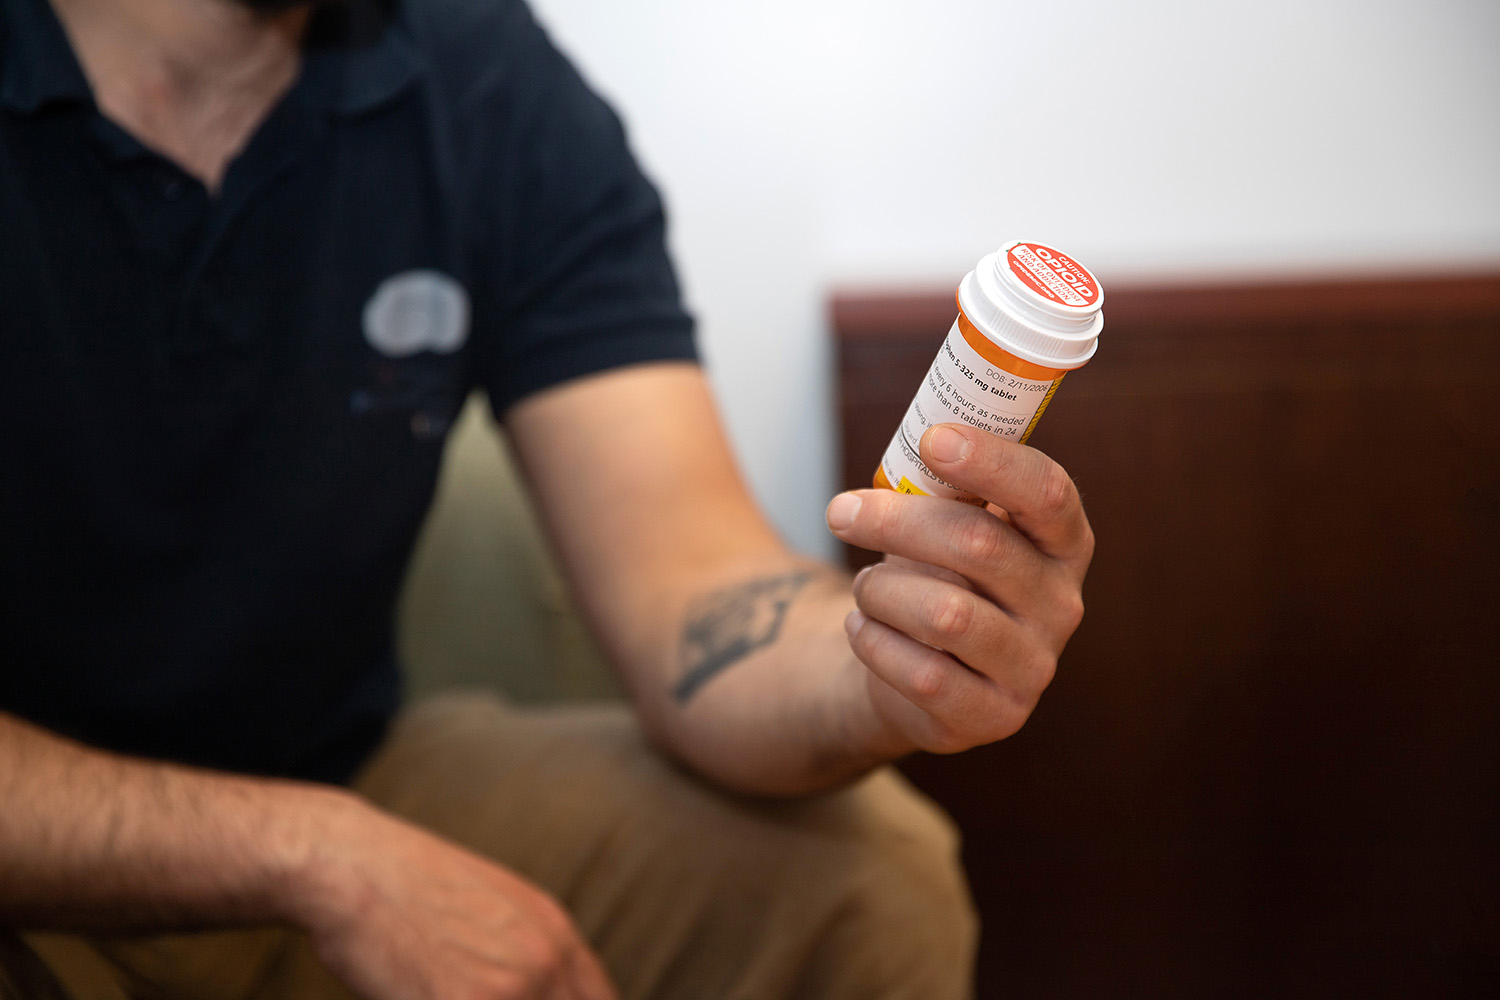 A man holds a bottle of prescription opioids